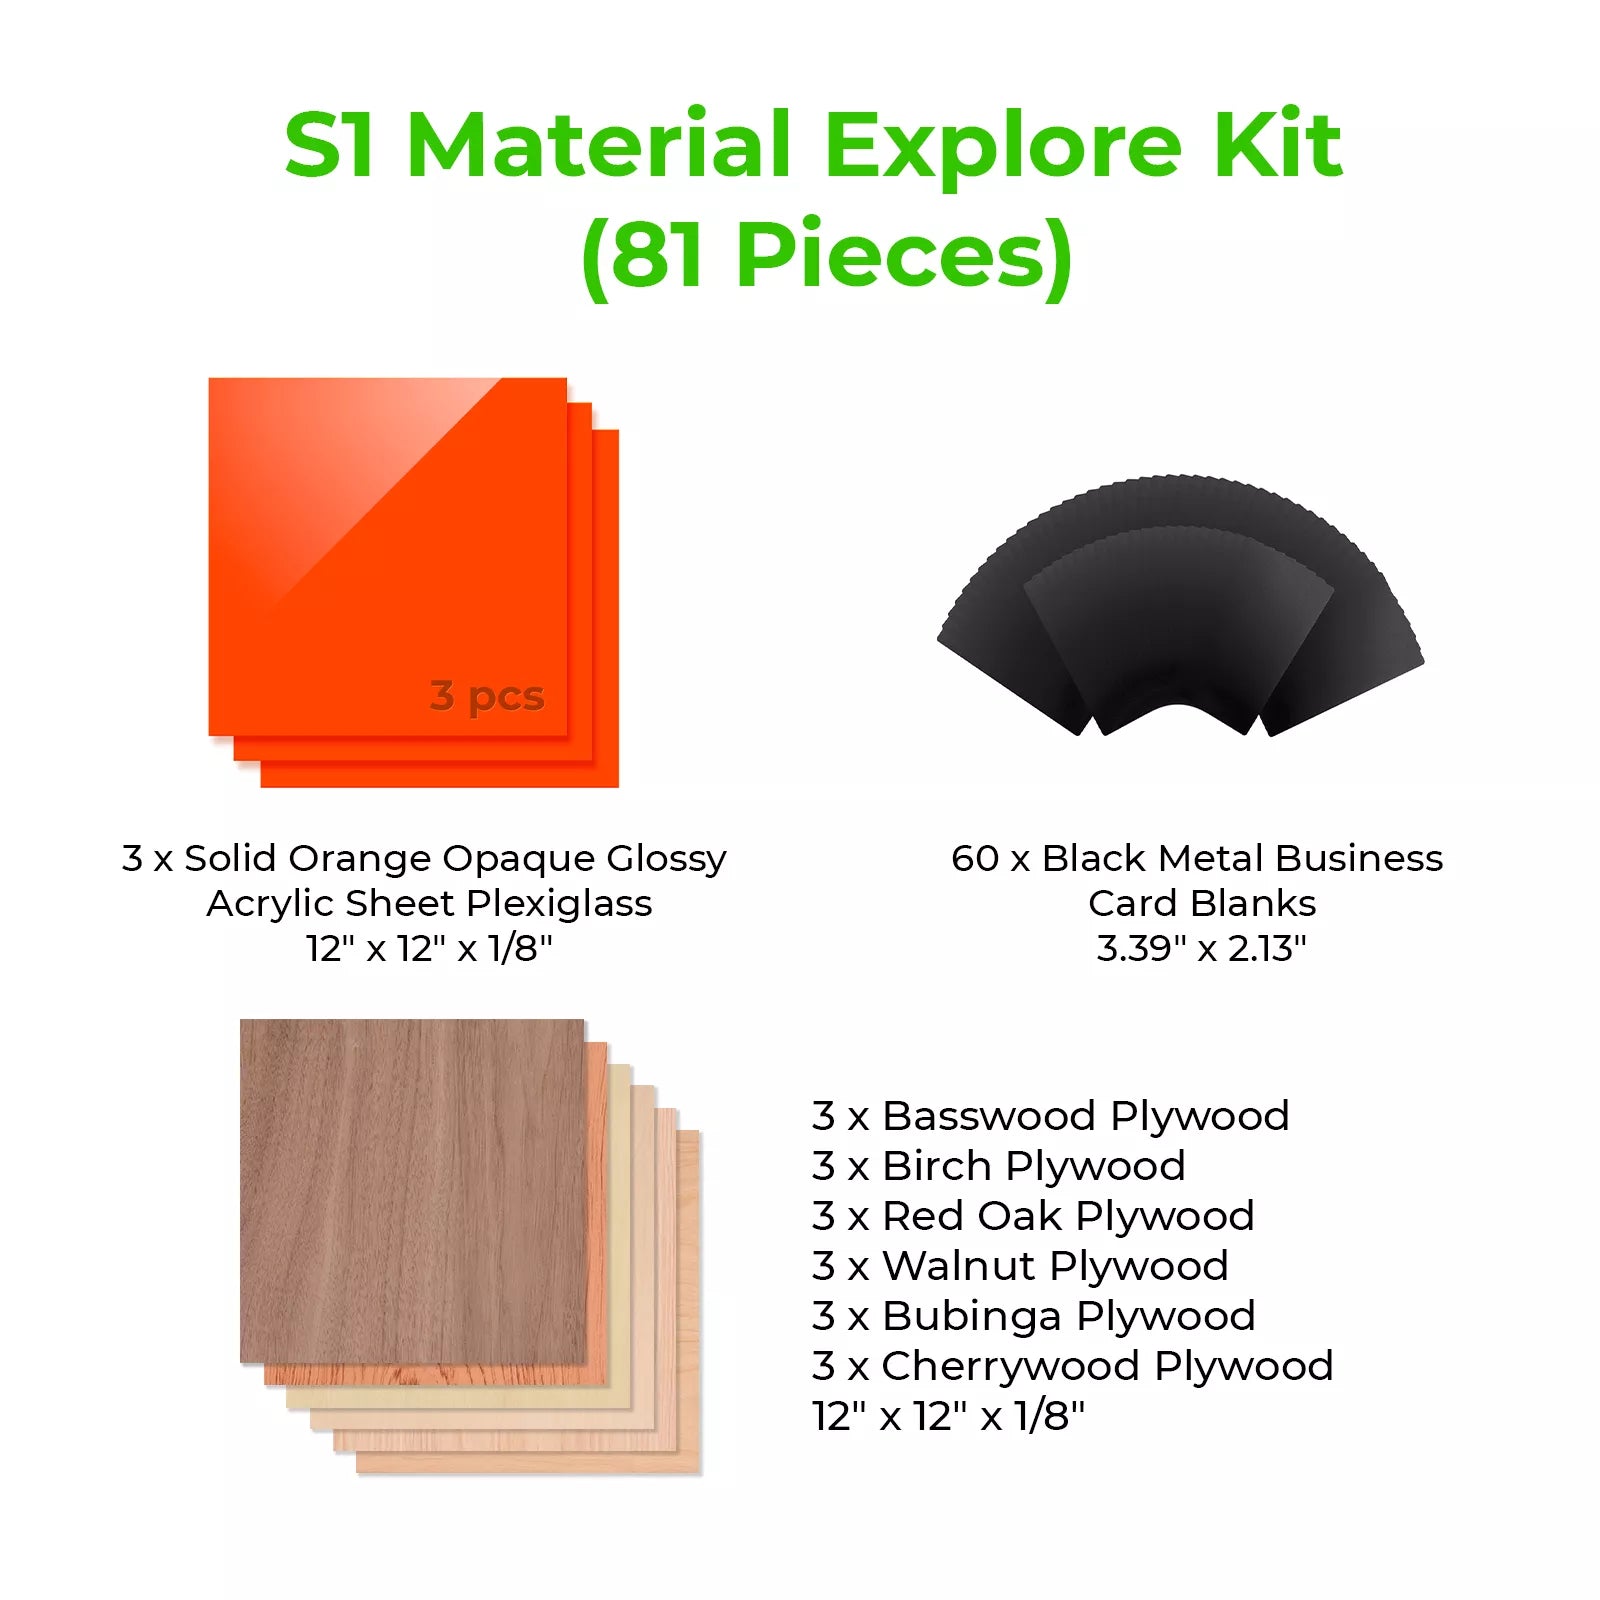 xTool S1 Material Explore Kit (81 pcs)